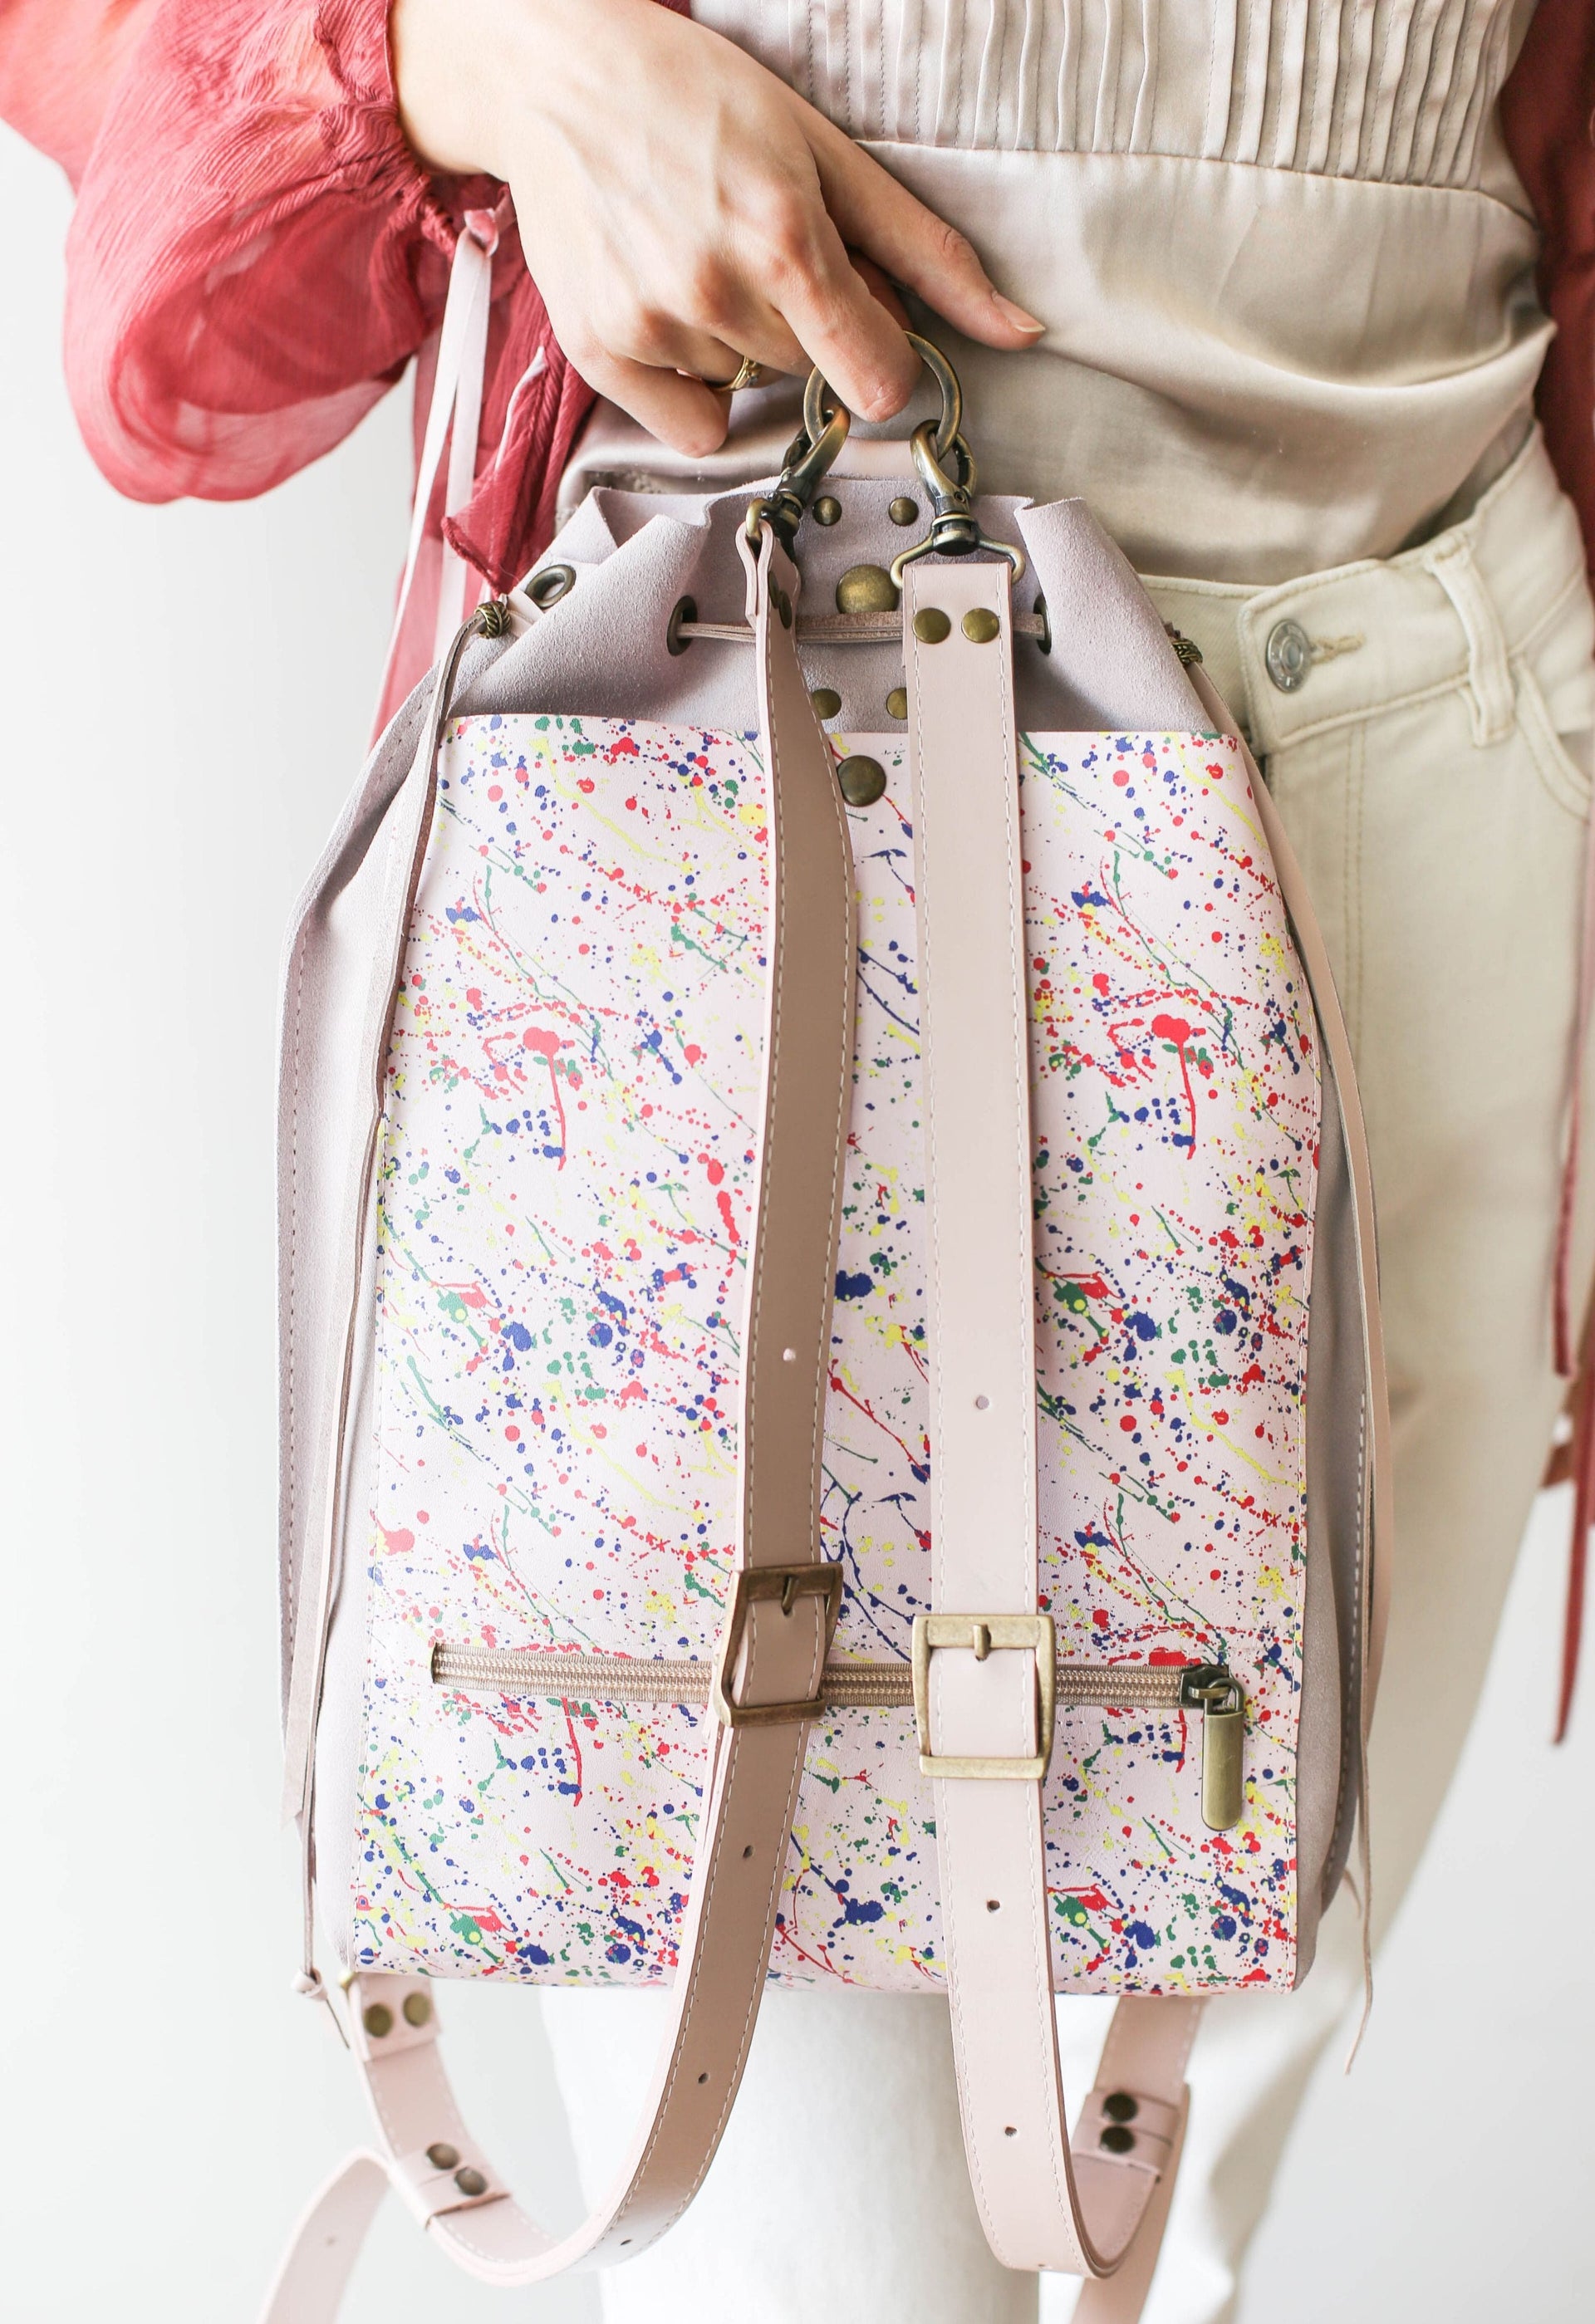 Pastel Pink Designer Backpack Purse